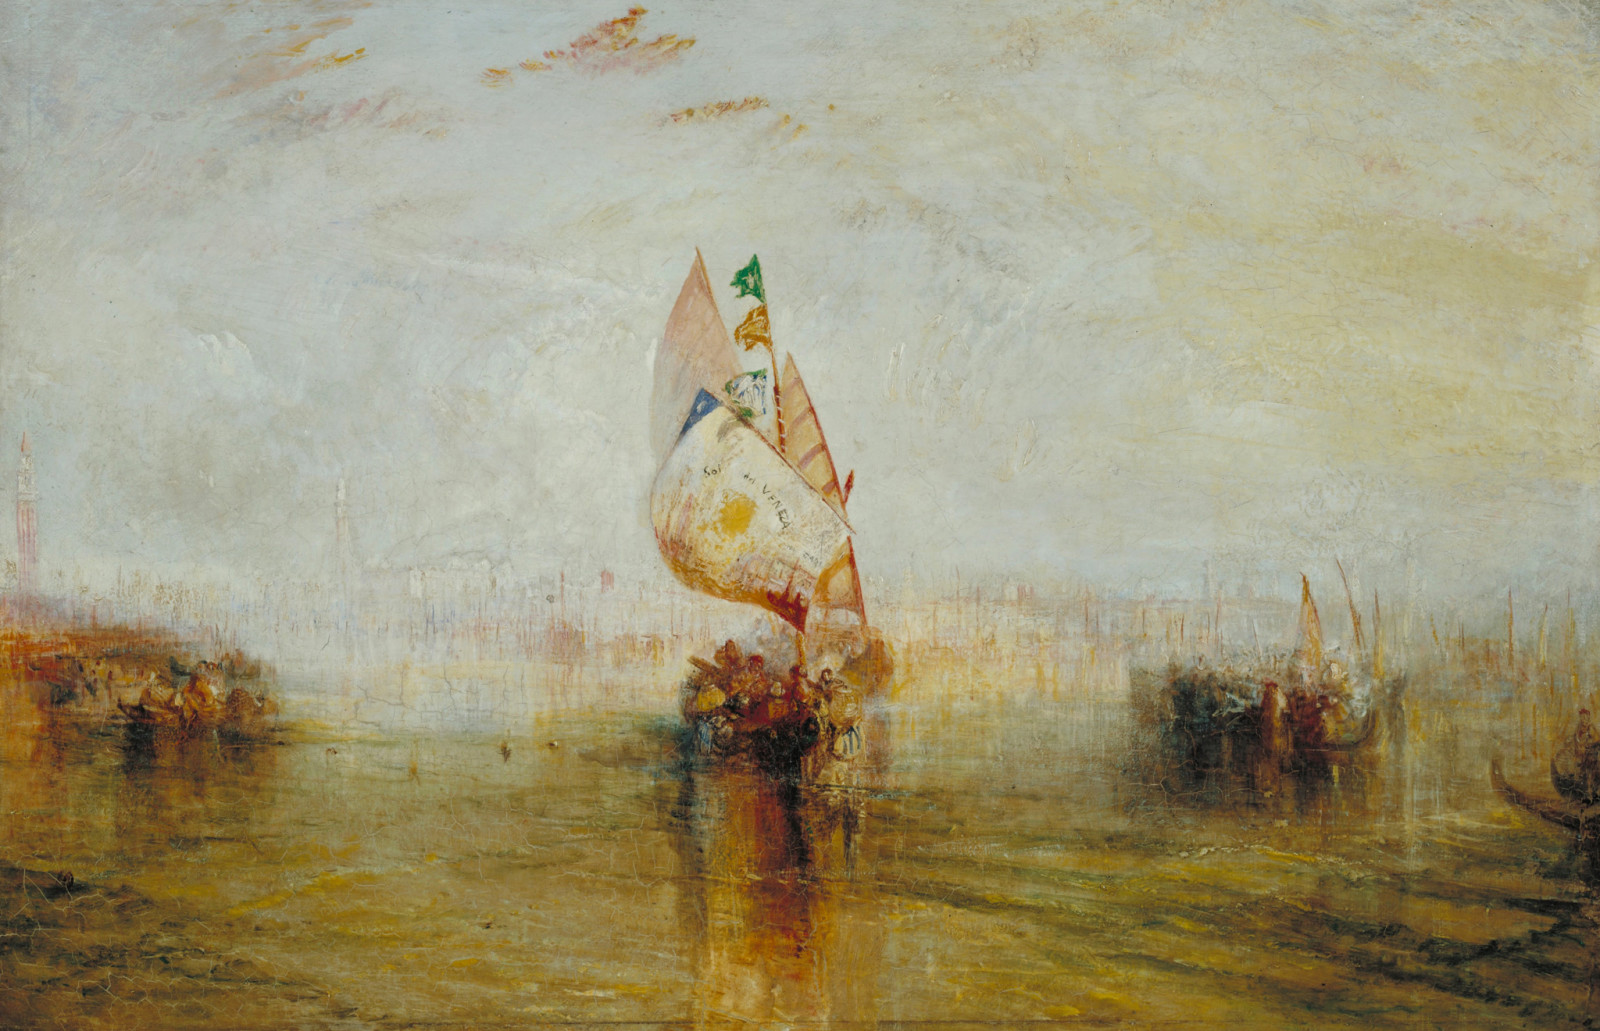 그림, 보트, 수채화, 돛, 바다 경치, 윌리엄 터너, 바다로가는 베니스의 태양